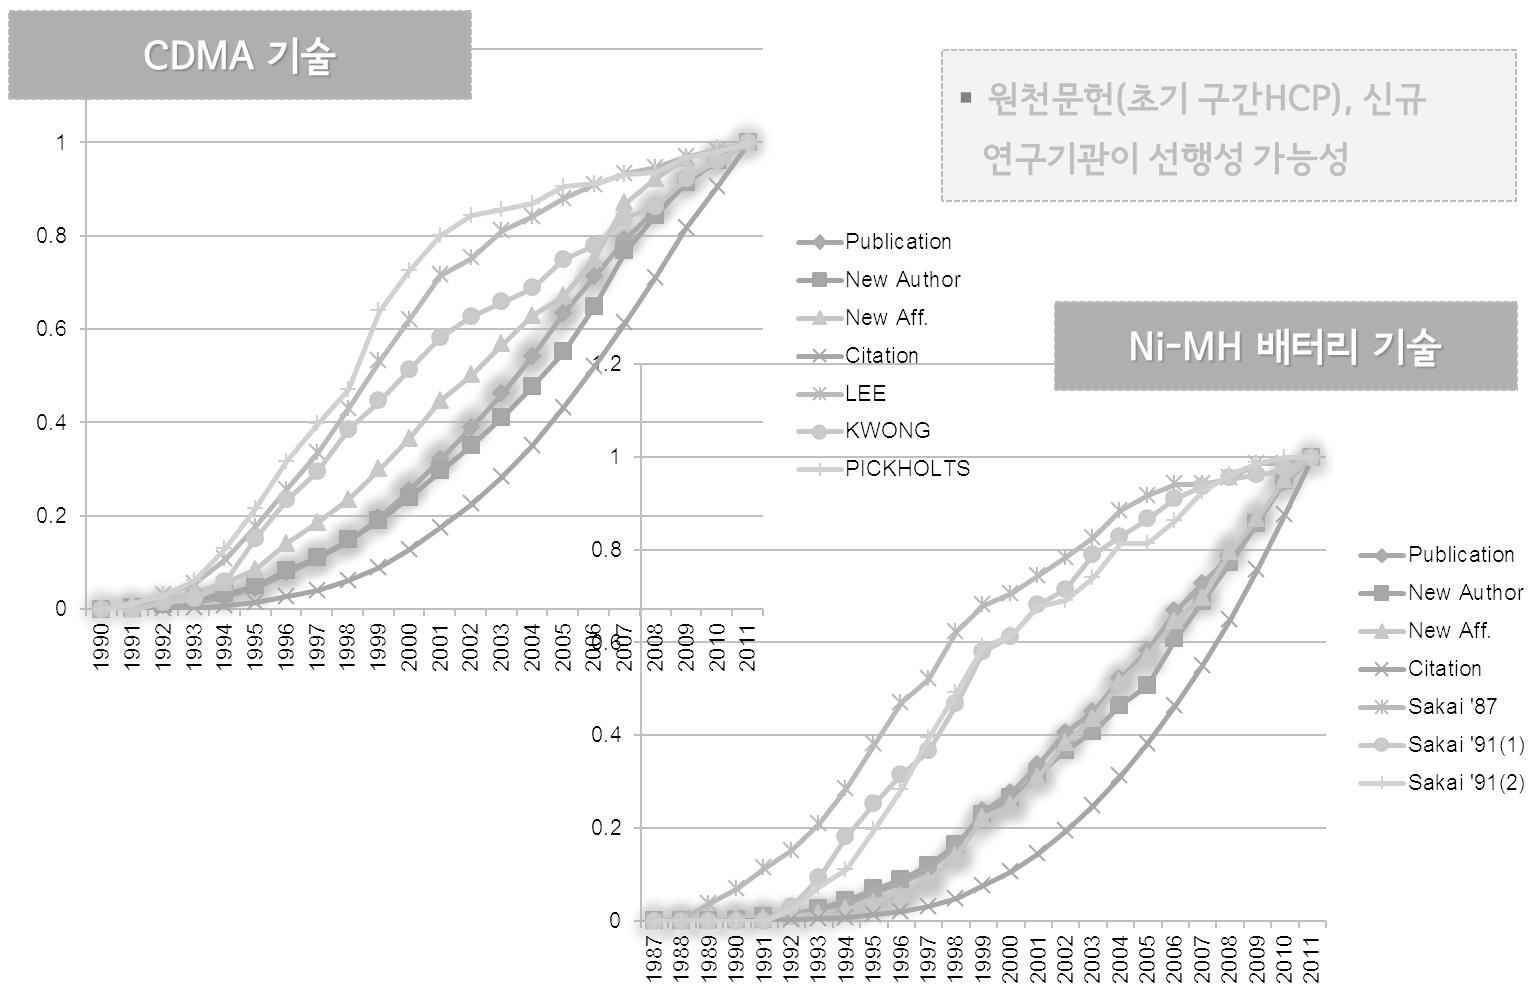 CDMA, Ni-MH 기술의 기술수명주기와 관련 지표값(누적)의 관계